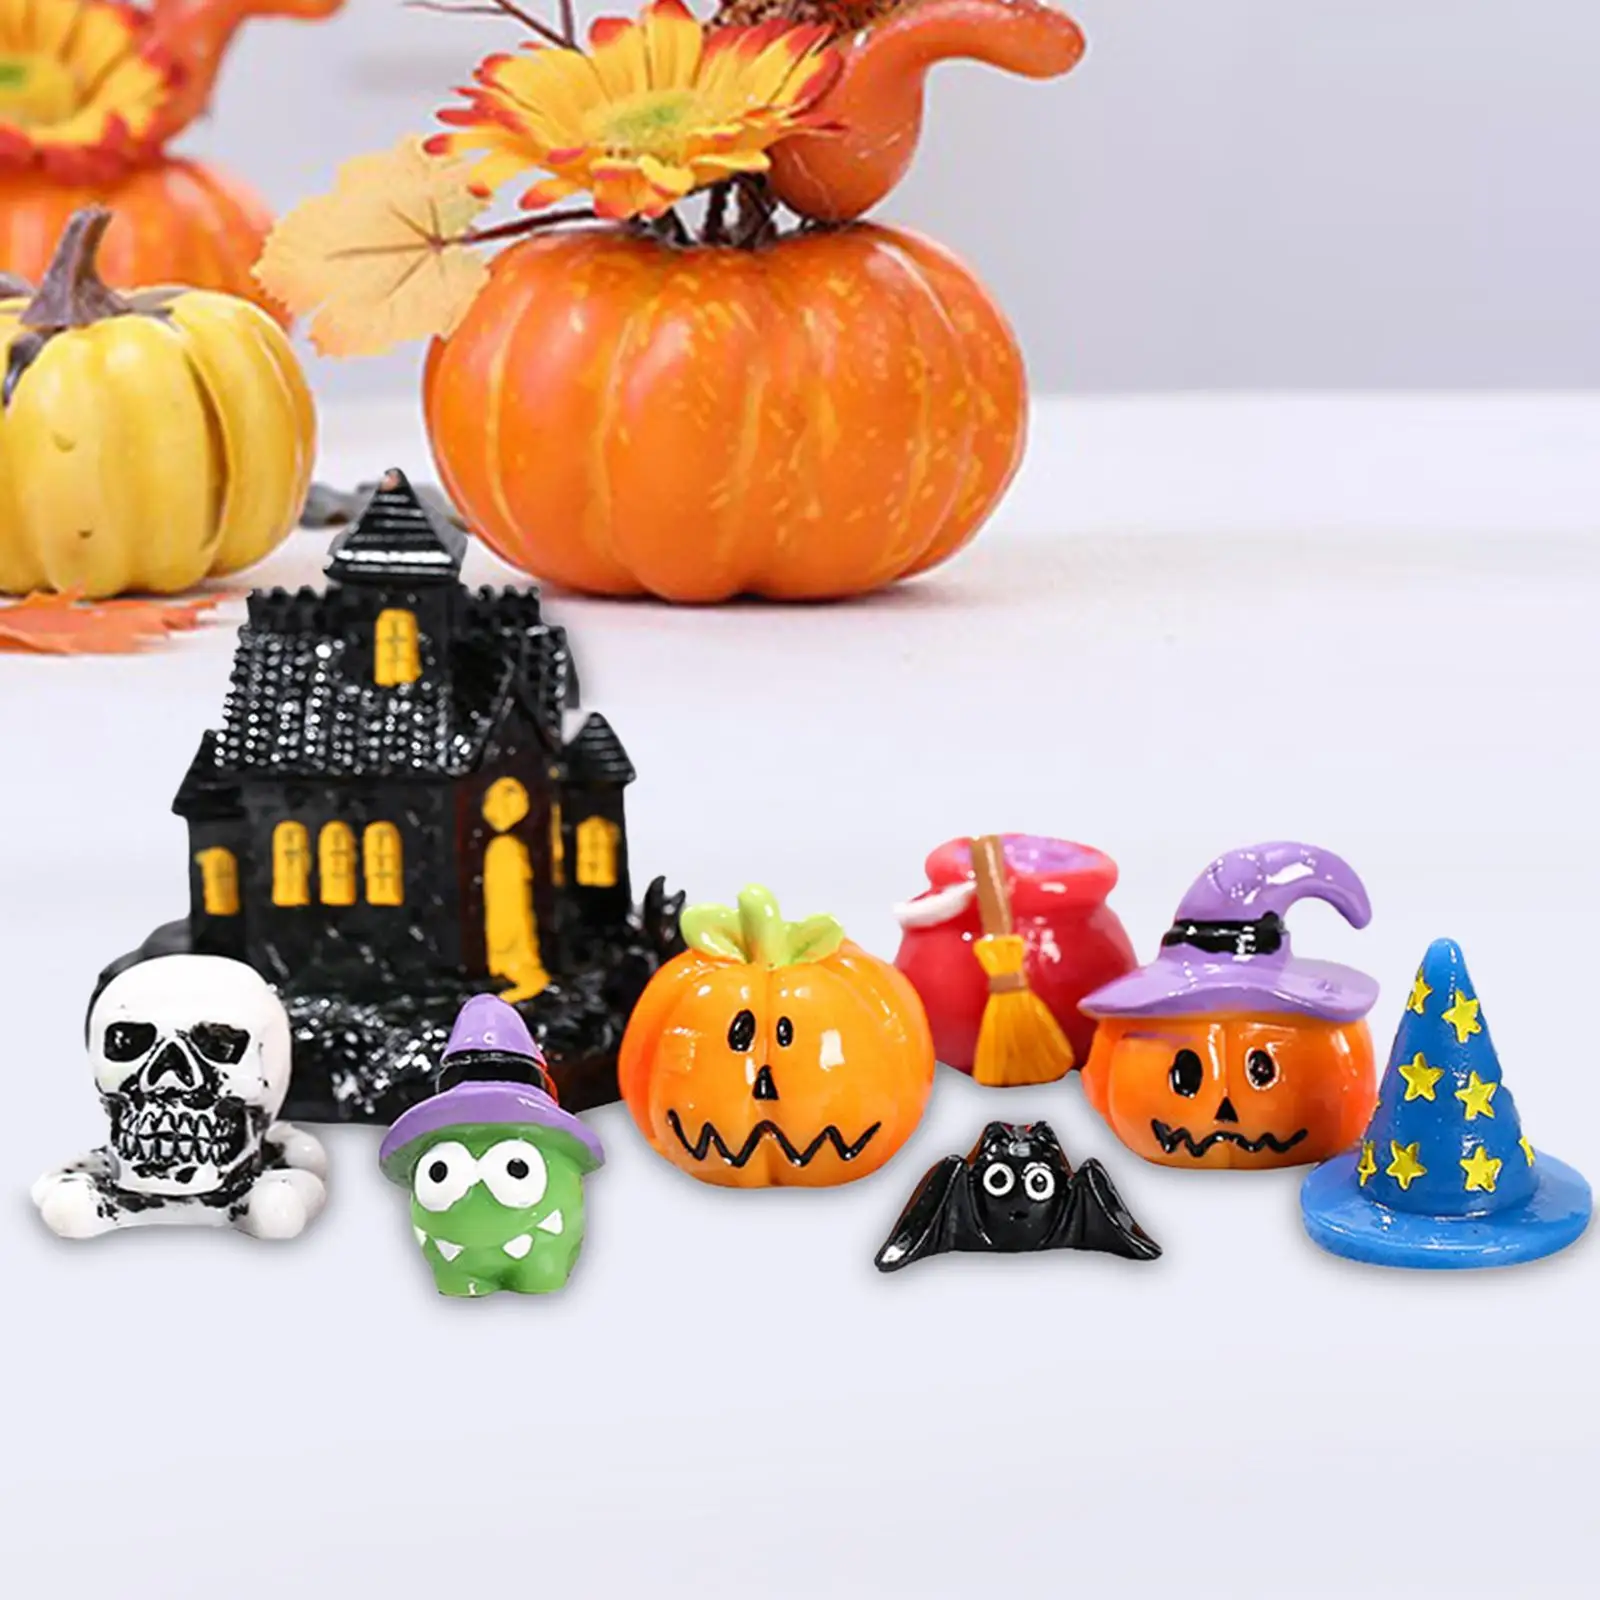 8 предметов сказочного садового набора для Хэллоуина, мини-украшения в виде тыкв из смолы 1